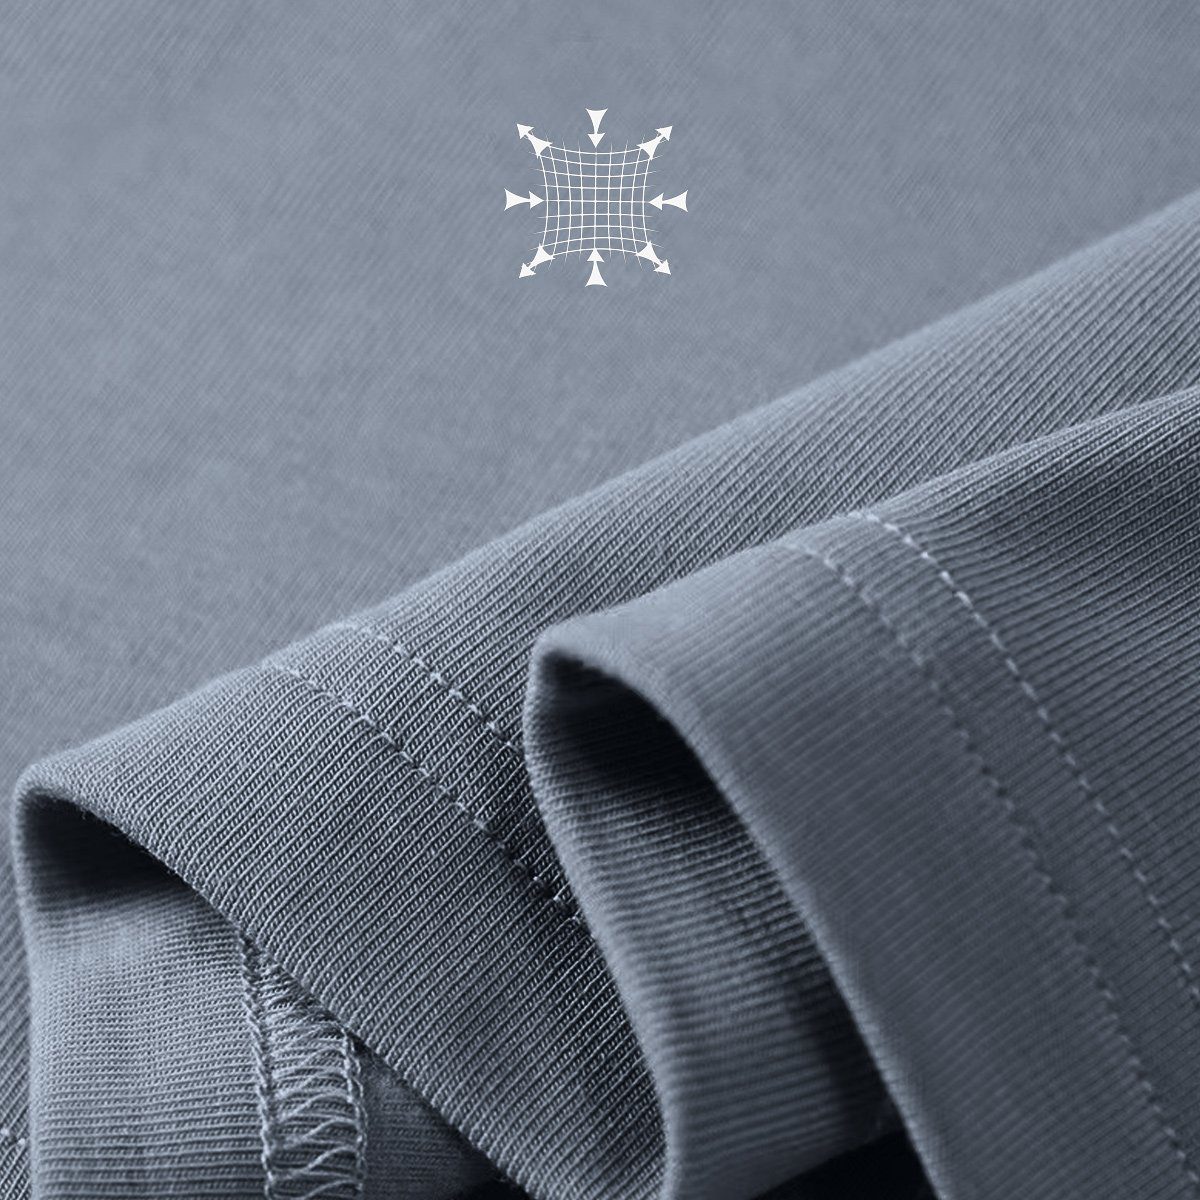 Pullover Langarm Damen Thermounterhemd Fit Winter Oni für Slim Grey Elegant Jormftte